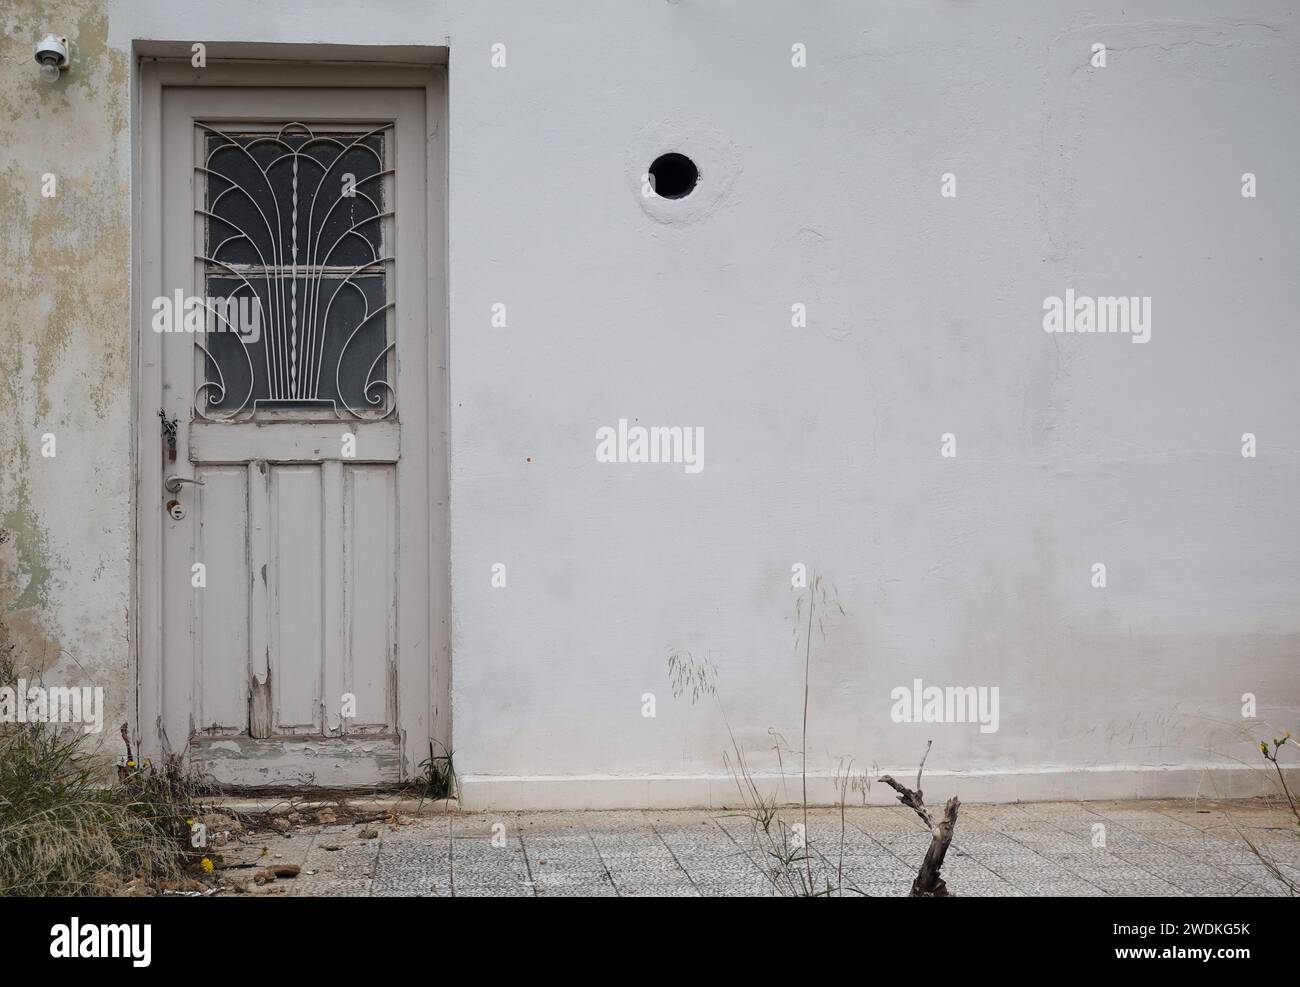 Vieille porte avec grille de grille en fer vintage design et mur texturé. Extérieur de la maison abandonnée. Banque D'Images